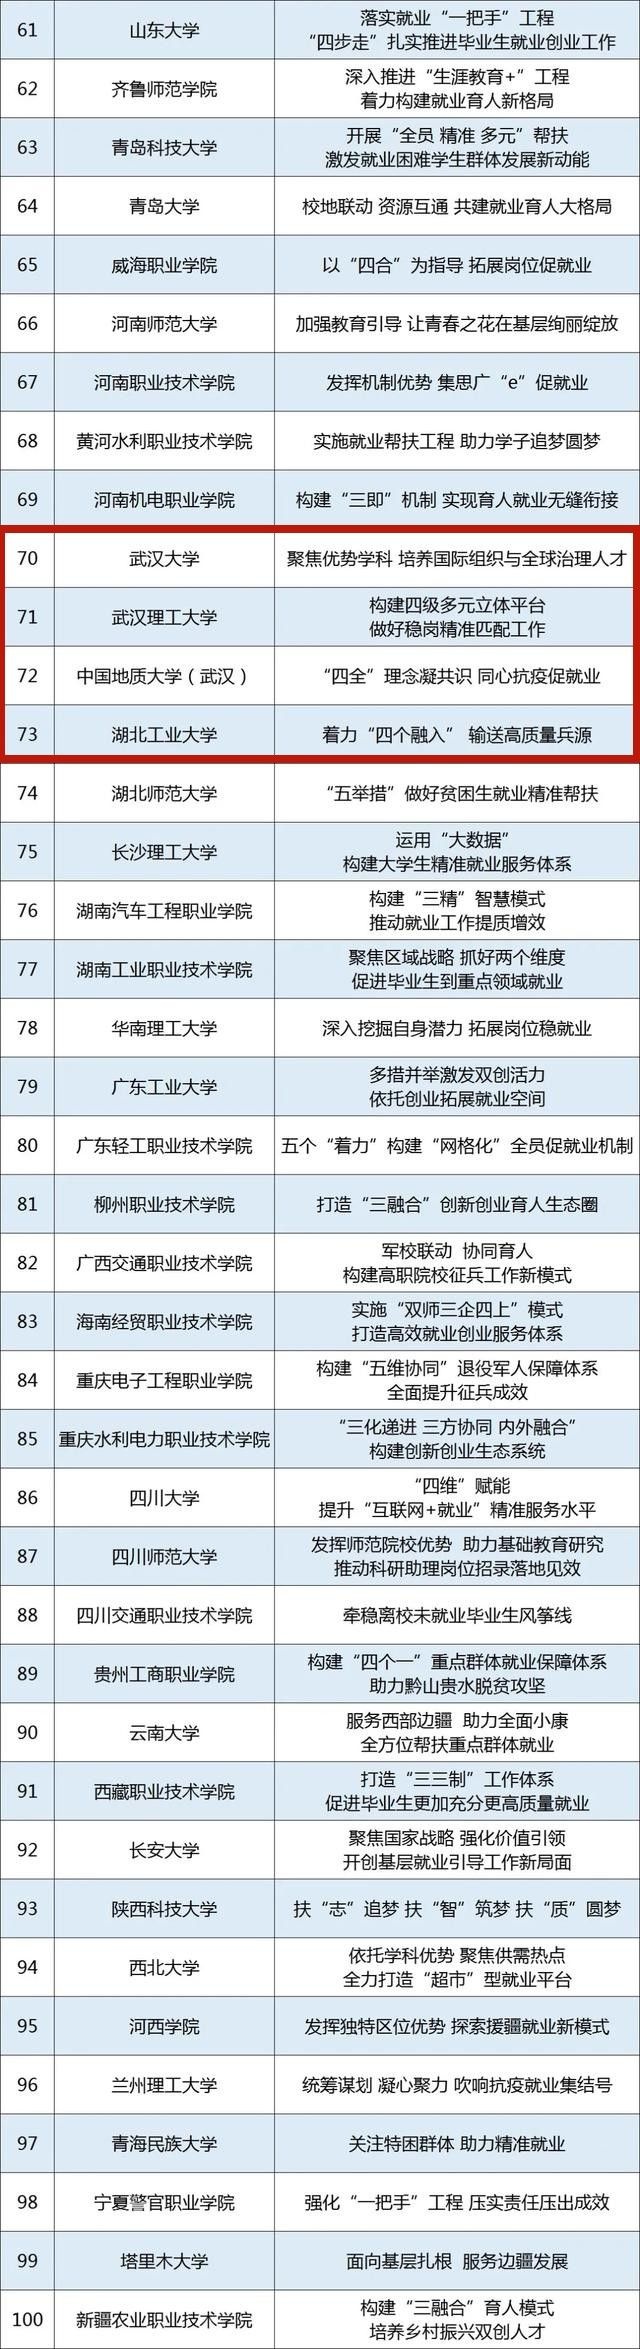 升学教育：事关就业创业，教育部公布100个典型案例，武汉4高校上榜